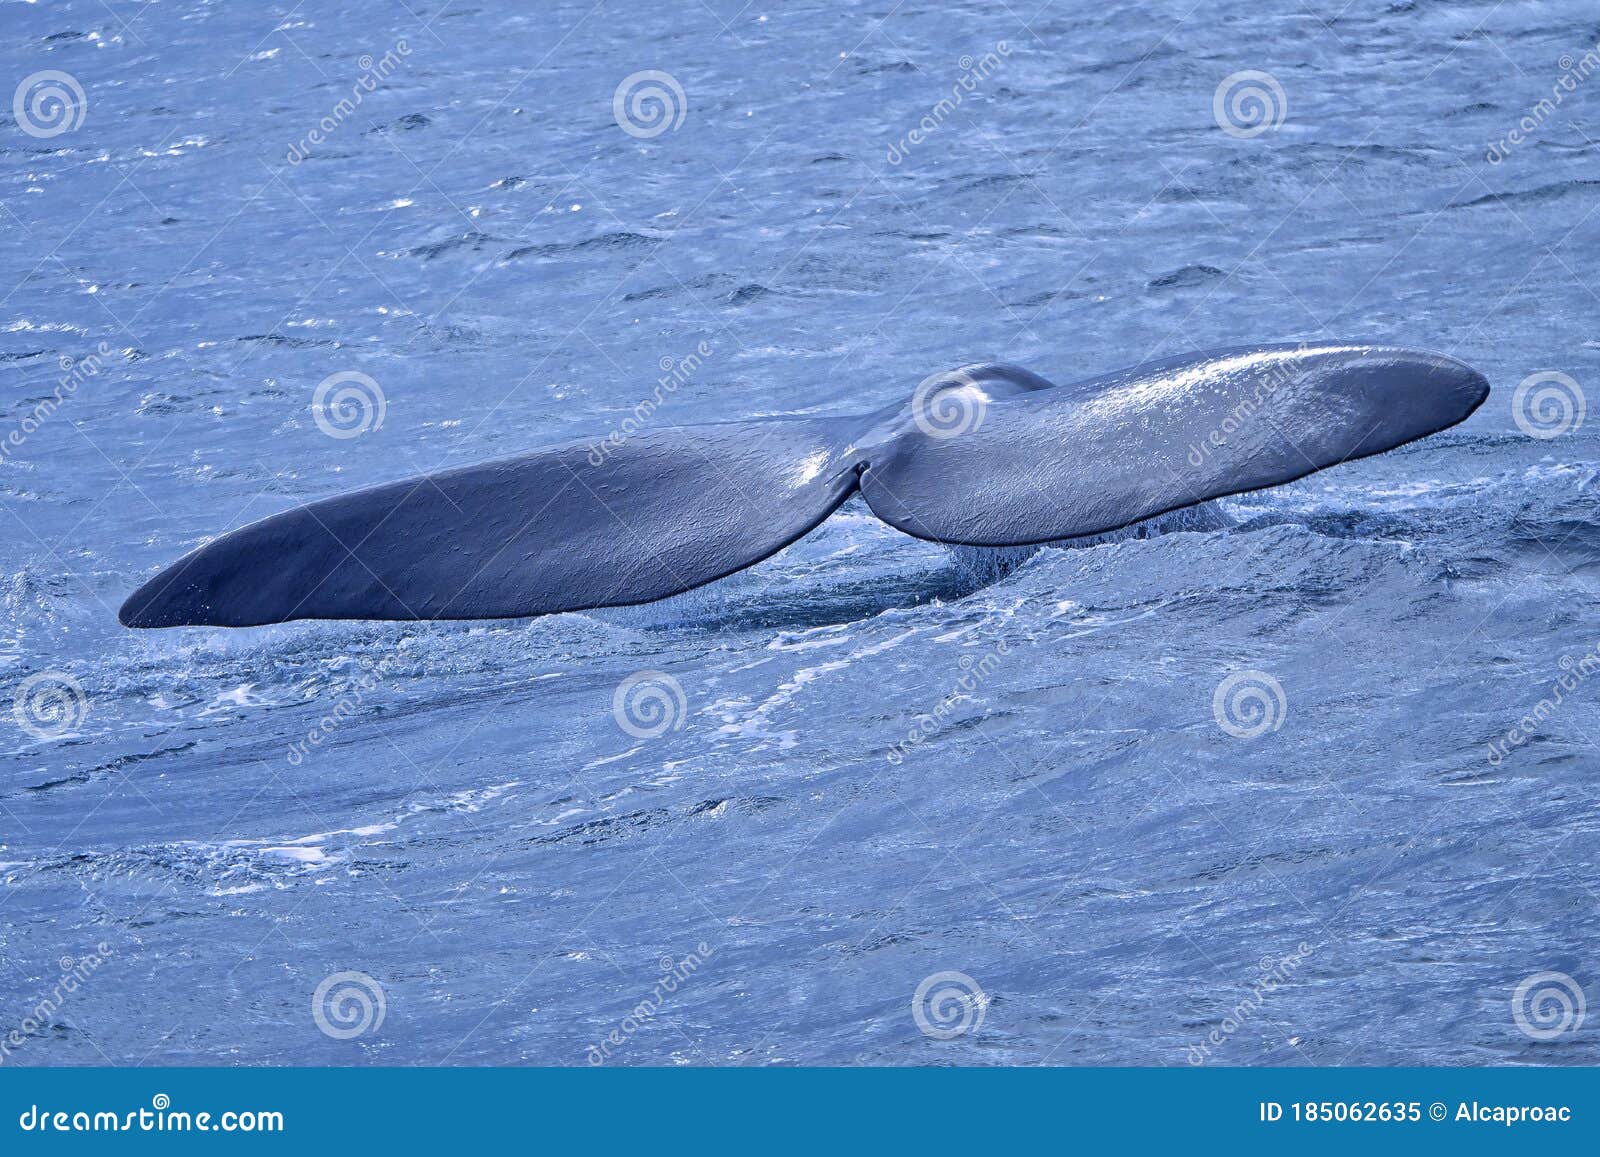 southern right whale, eubalaena australis, gansbaai